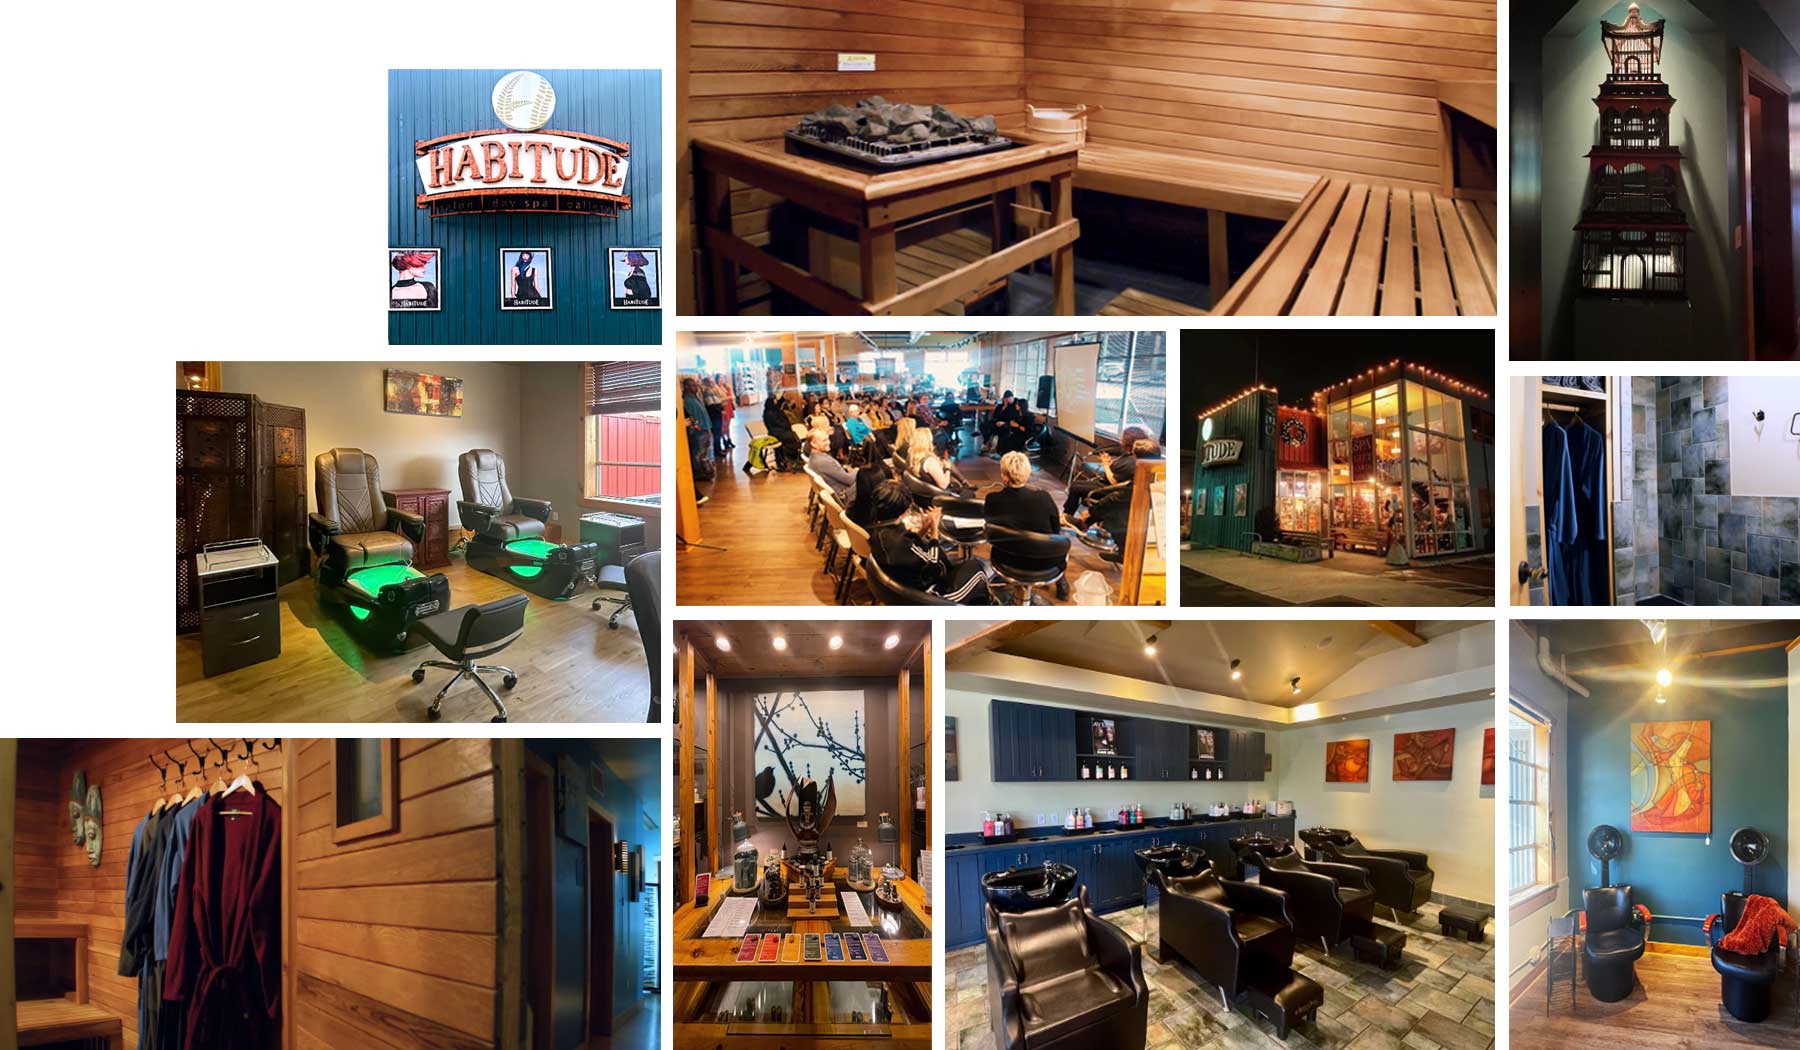 Habitude Spa and Salon Location photo collage